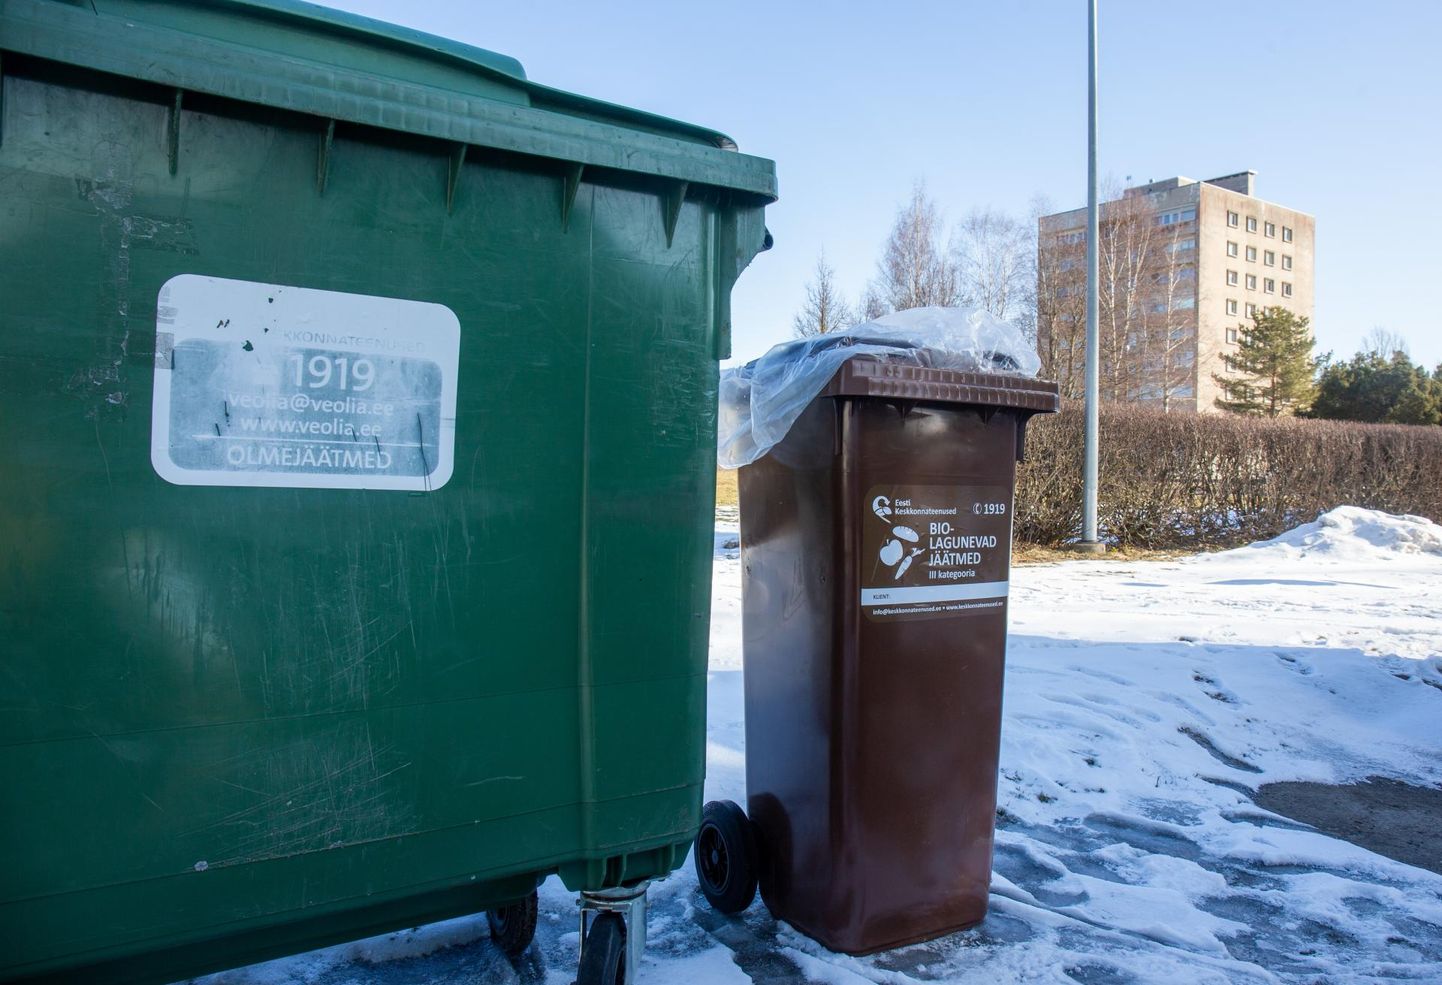 Biolagunevate jäätmete konteinerid on pruunid või kannavad pruunil taustal kirjeid ning neid ei tühjendata nii sageli kui sortimata prügiga konteinereid.